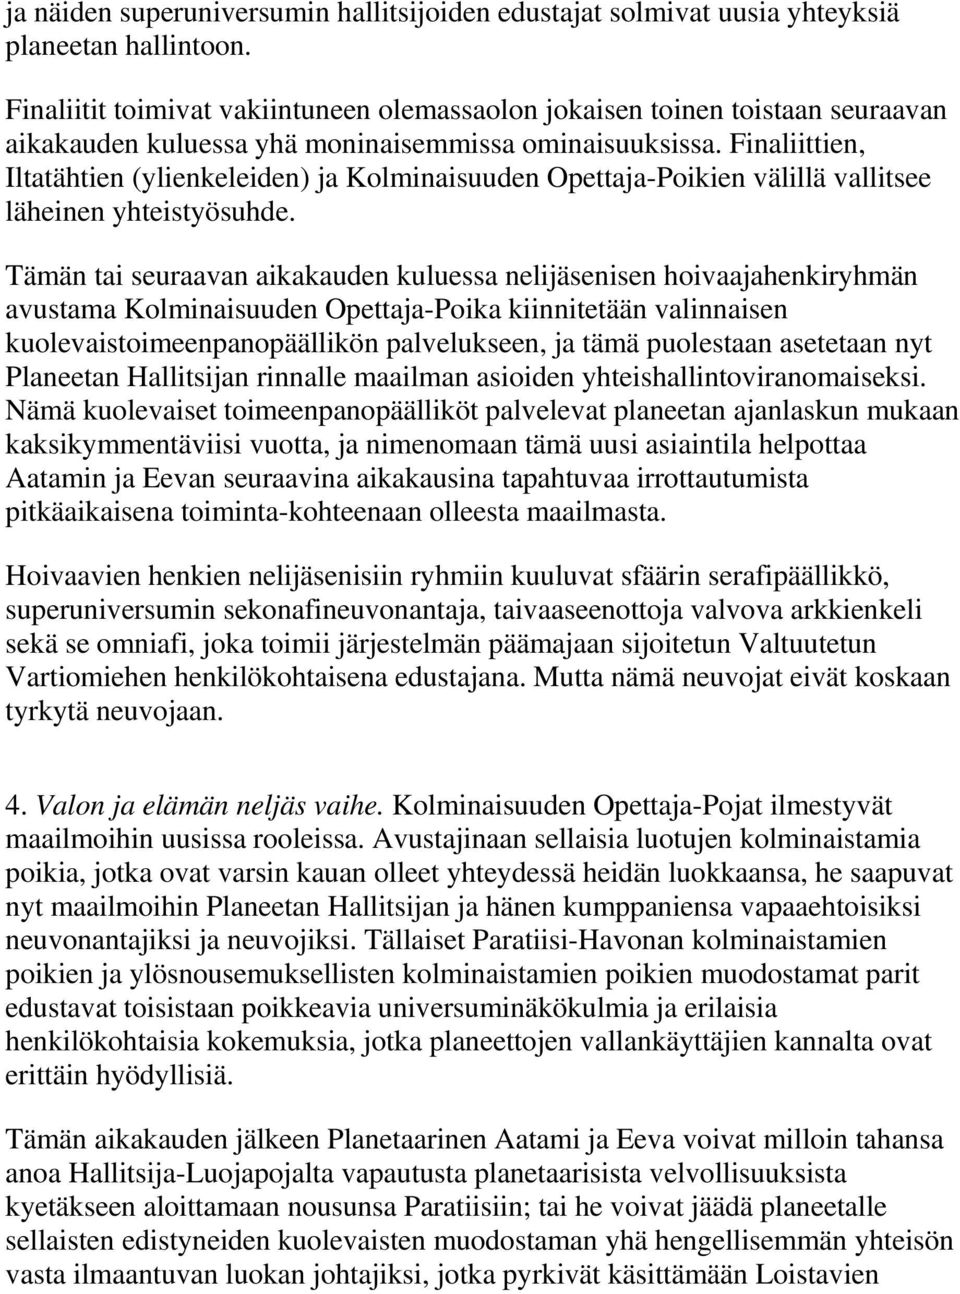 Finaliittien, Iltatähtien (ylienkeleiden) ja Kolminaisuuden Opettaja-Poikien välillä vallitsee läheinen yhteistyösuhde.